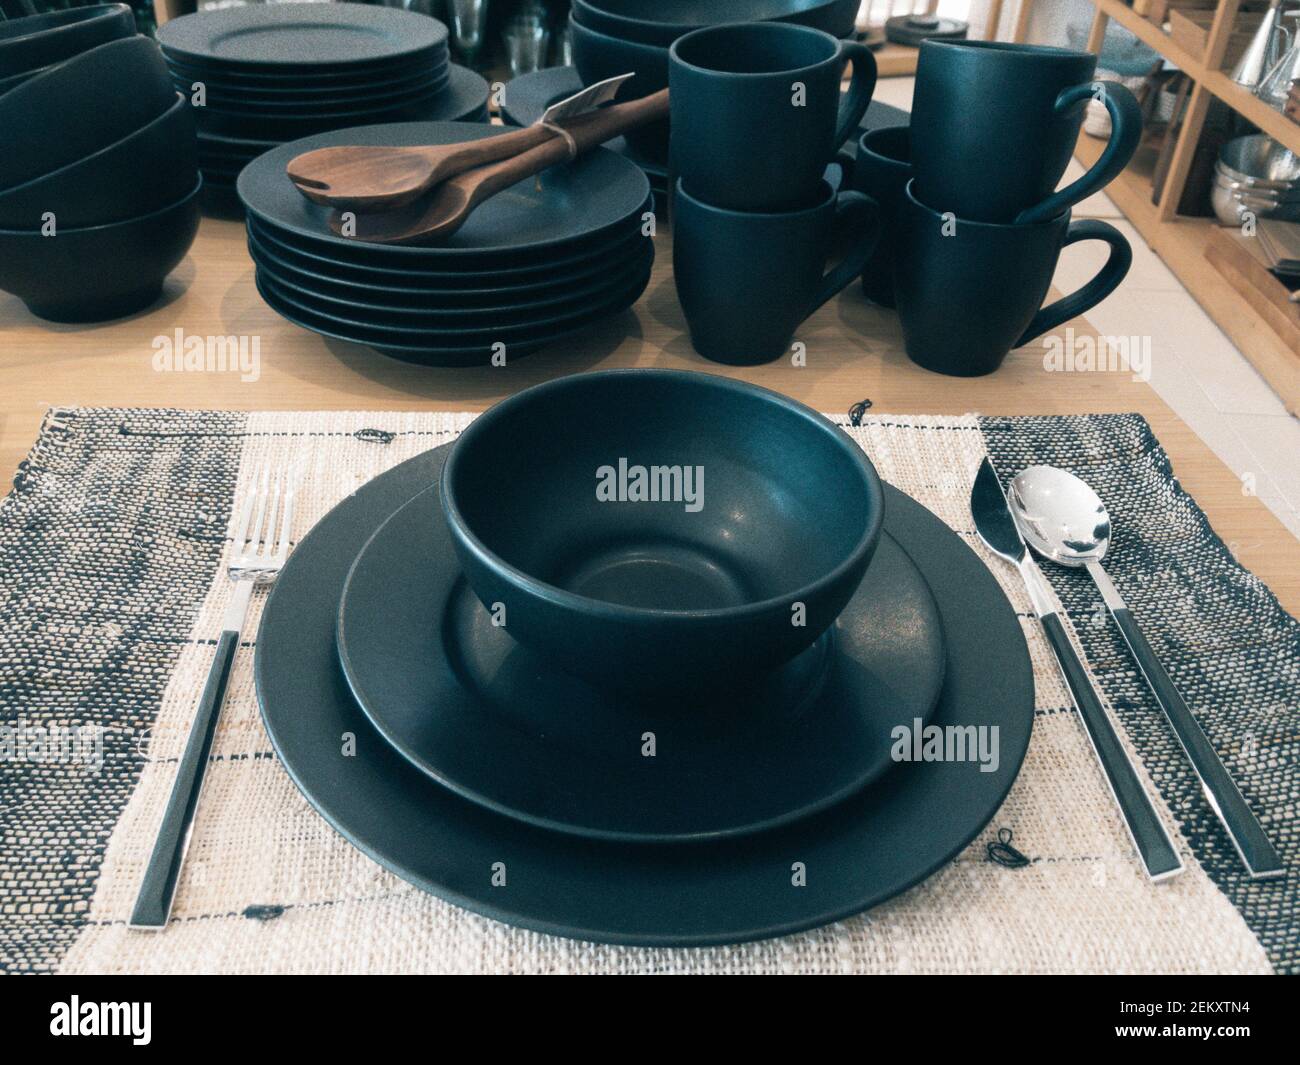 Platos de cerámica negra y tazas de mesa. Casa boutique de estilo asiático moderno Foto de stock